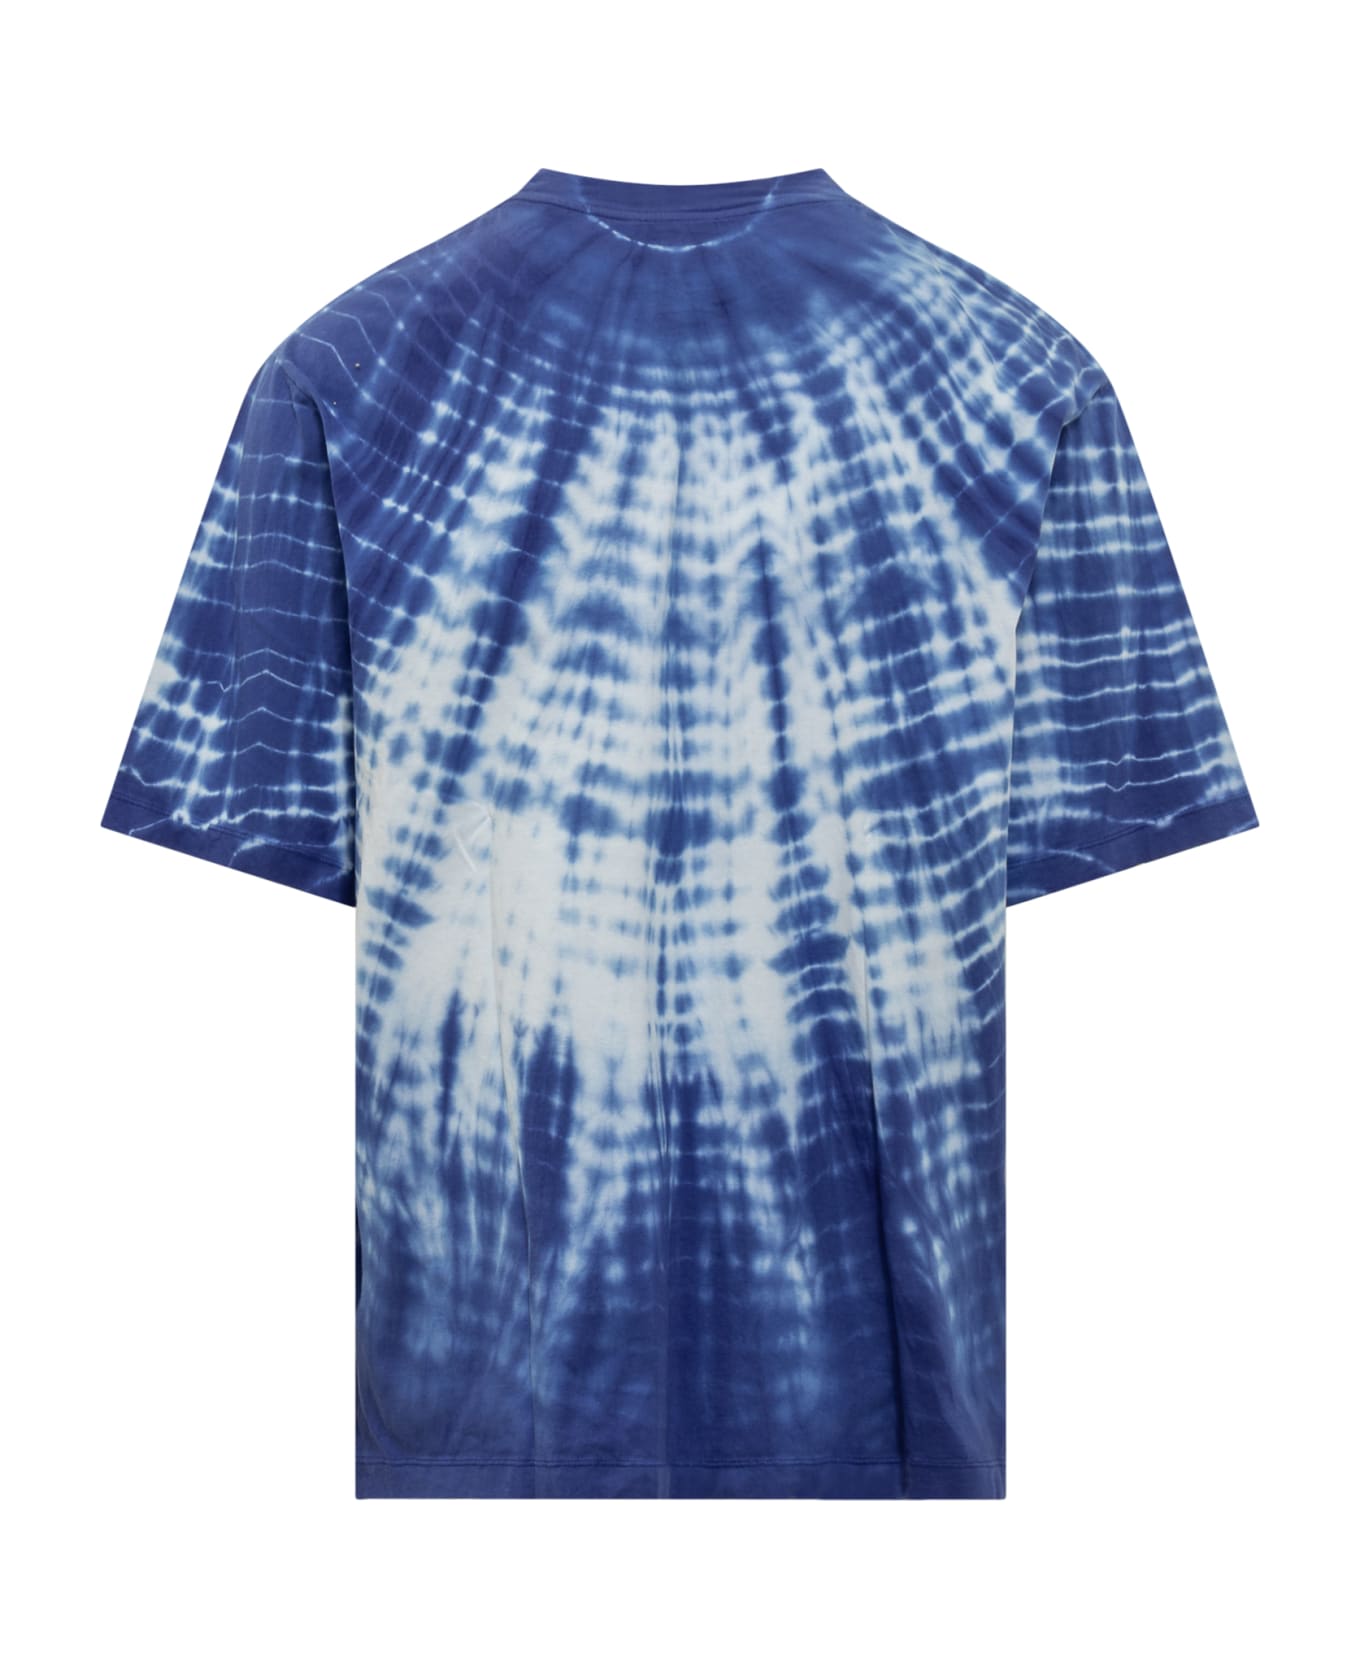 Marcelo Burlon Cotton Tie-dye T-shirt - BLUE WHITE シャツ